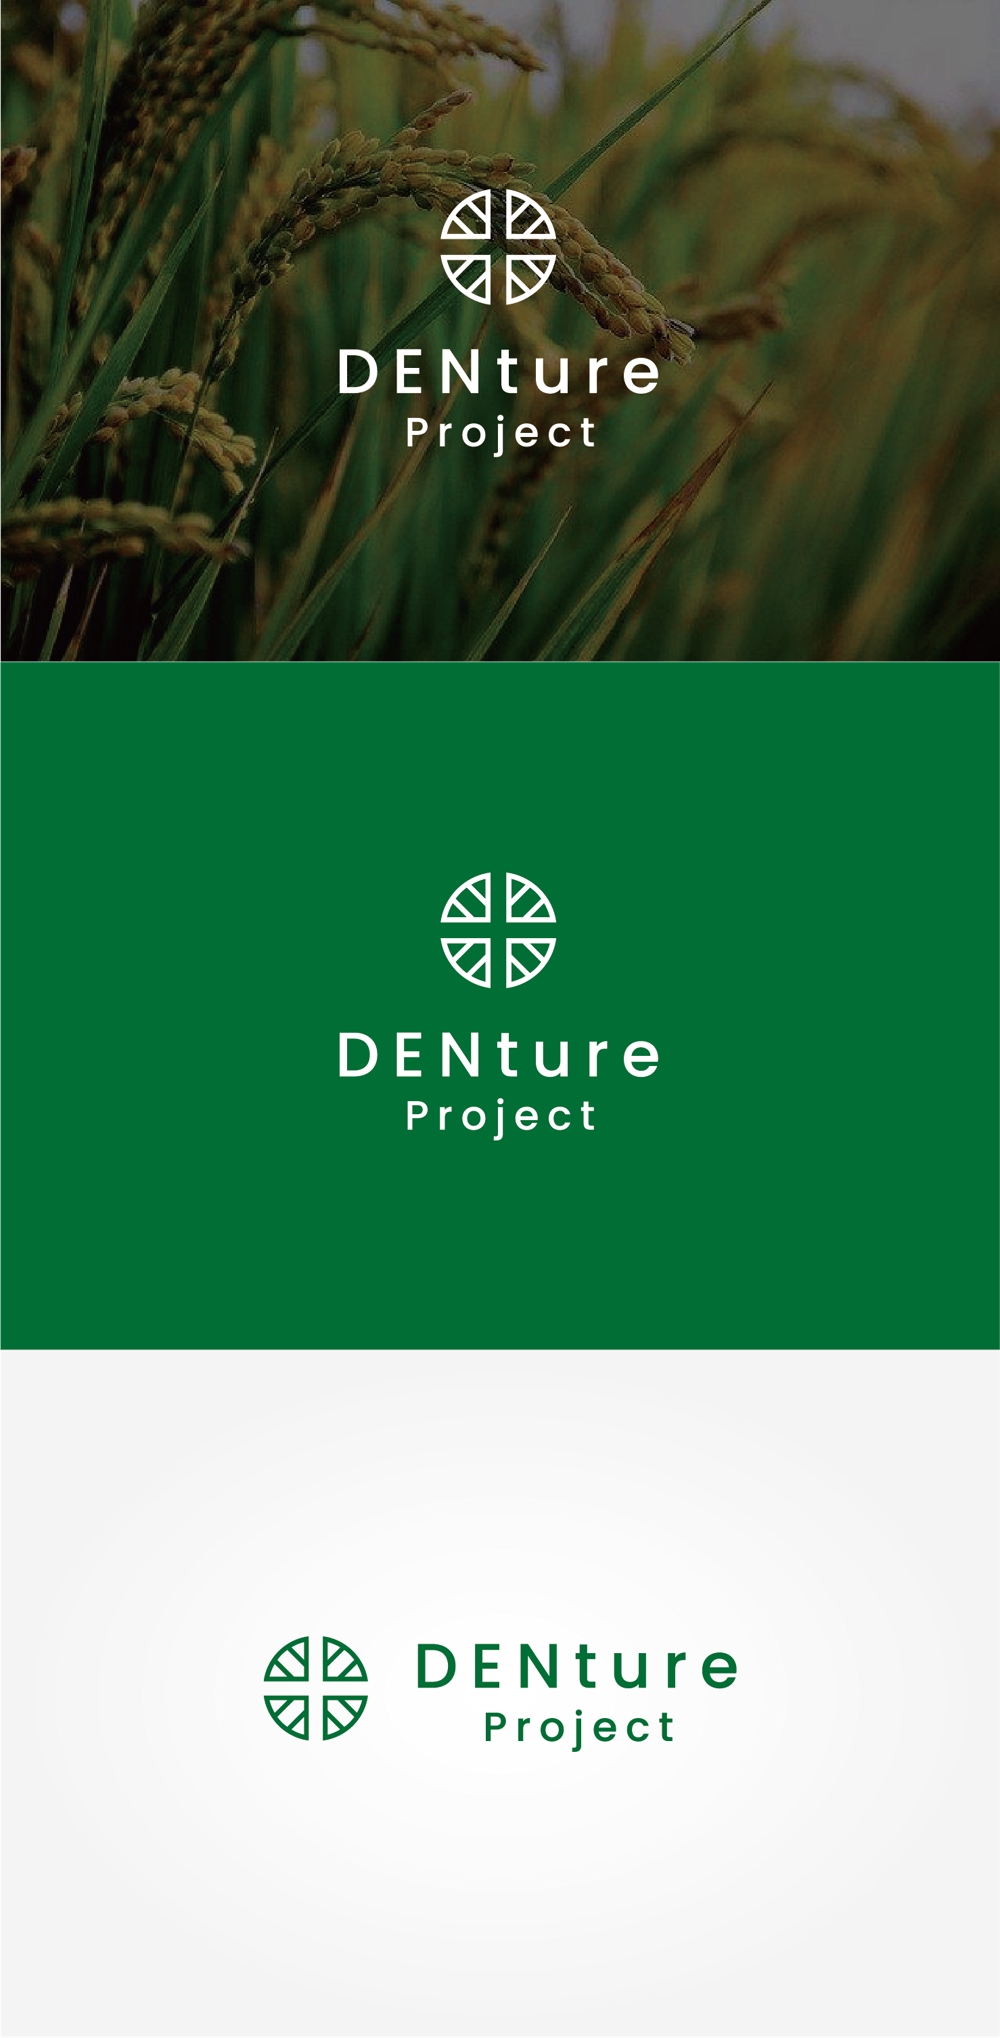 田んぼ（米づくり）の大切さを未来につたえる“プロジェクトロゴ”の制作